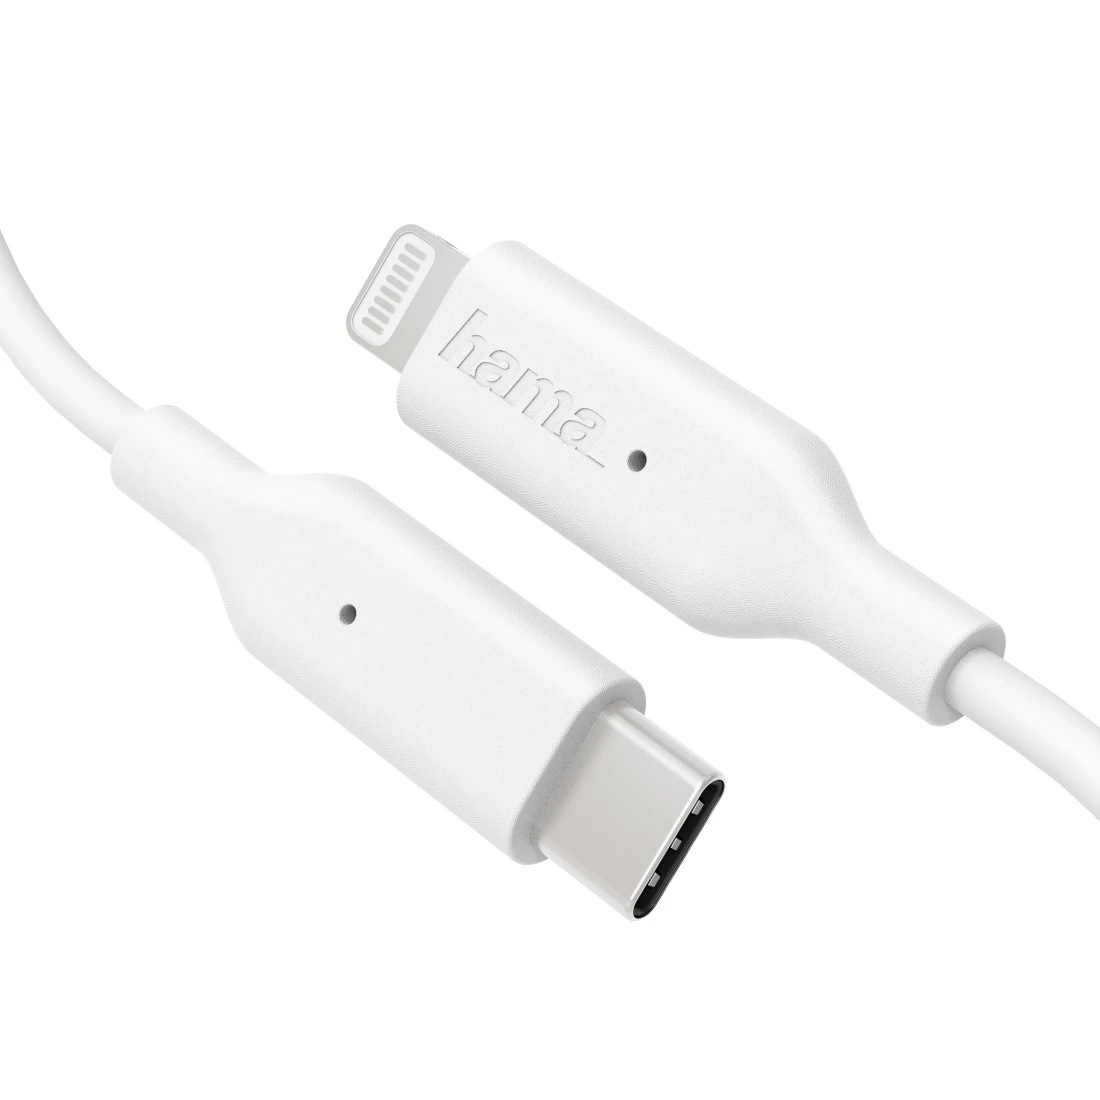 Cable de datos y carga rápida, USB Type-C a Lightning, 1 m, blanco | Hama